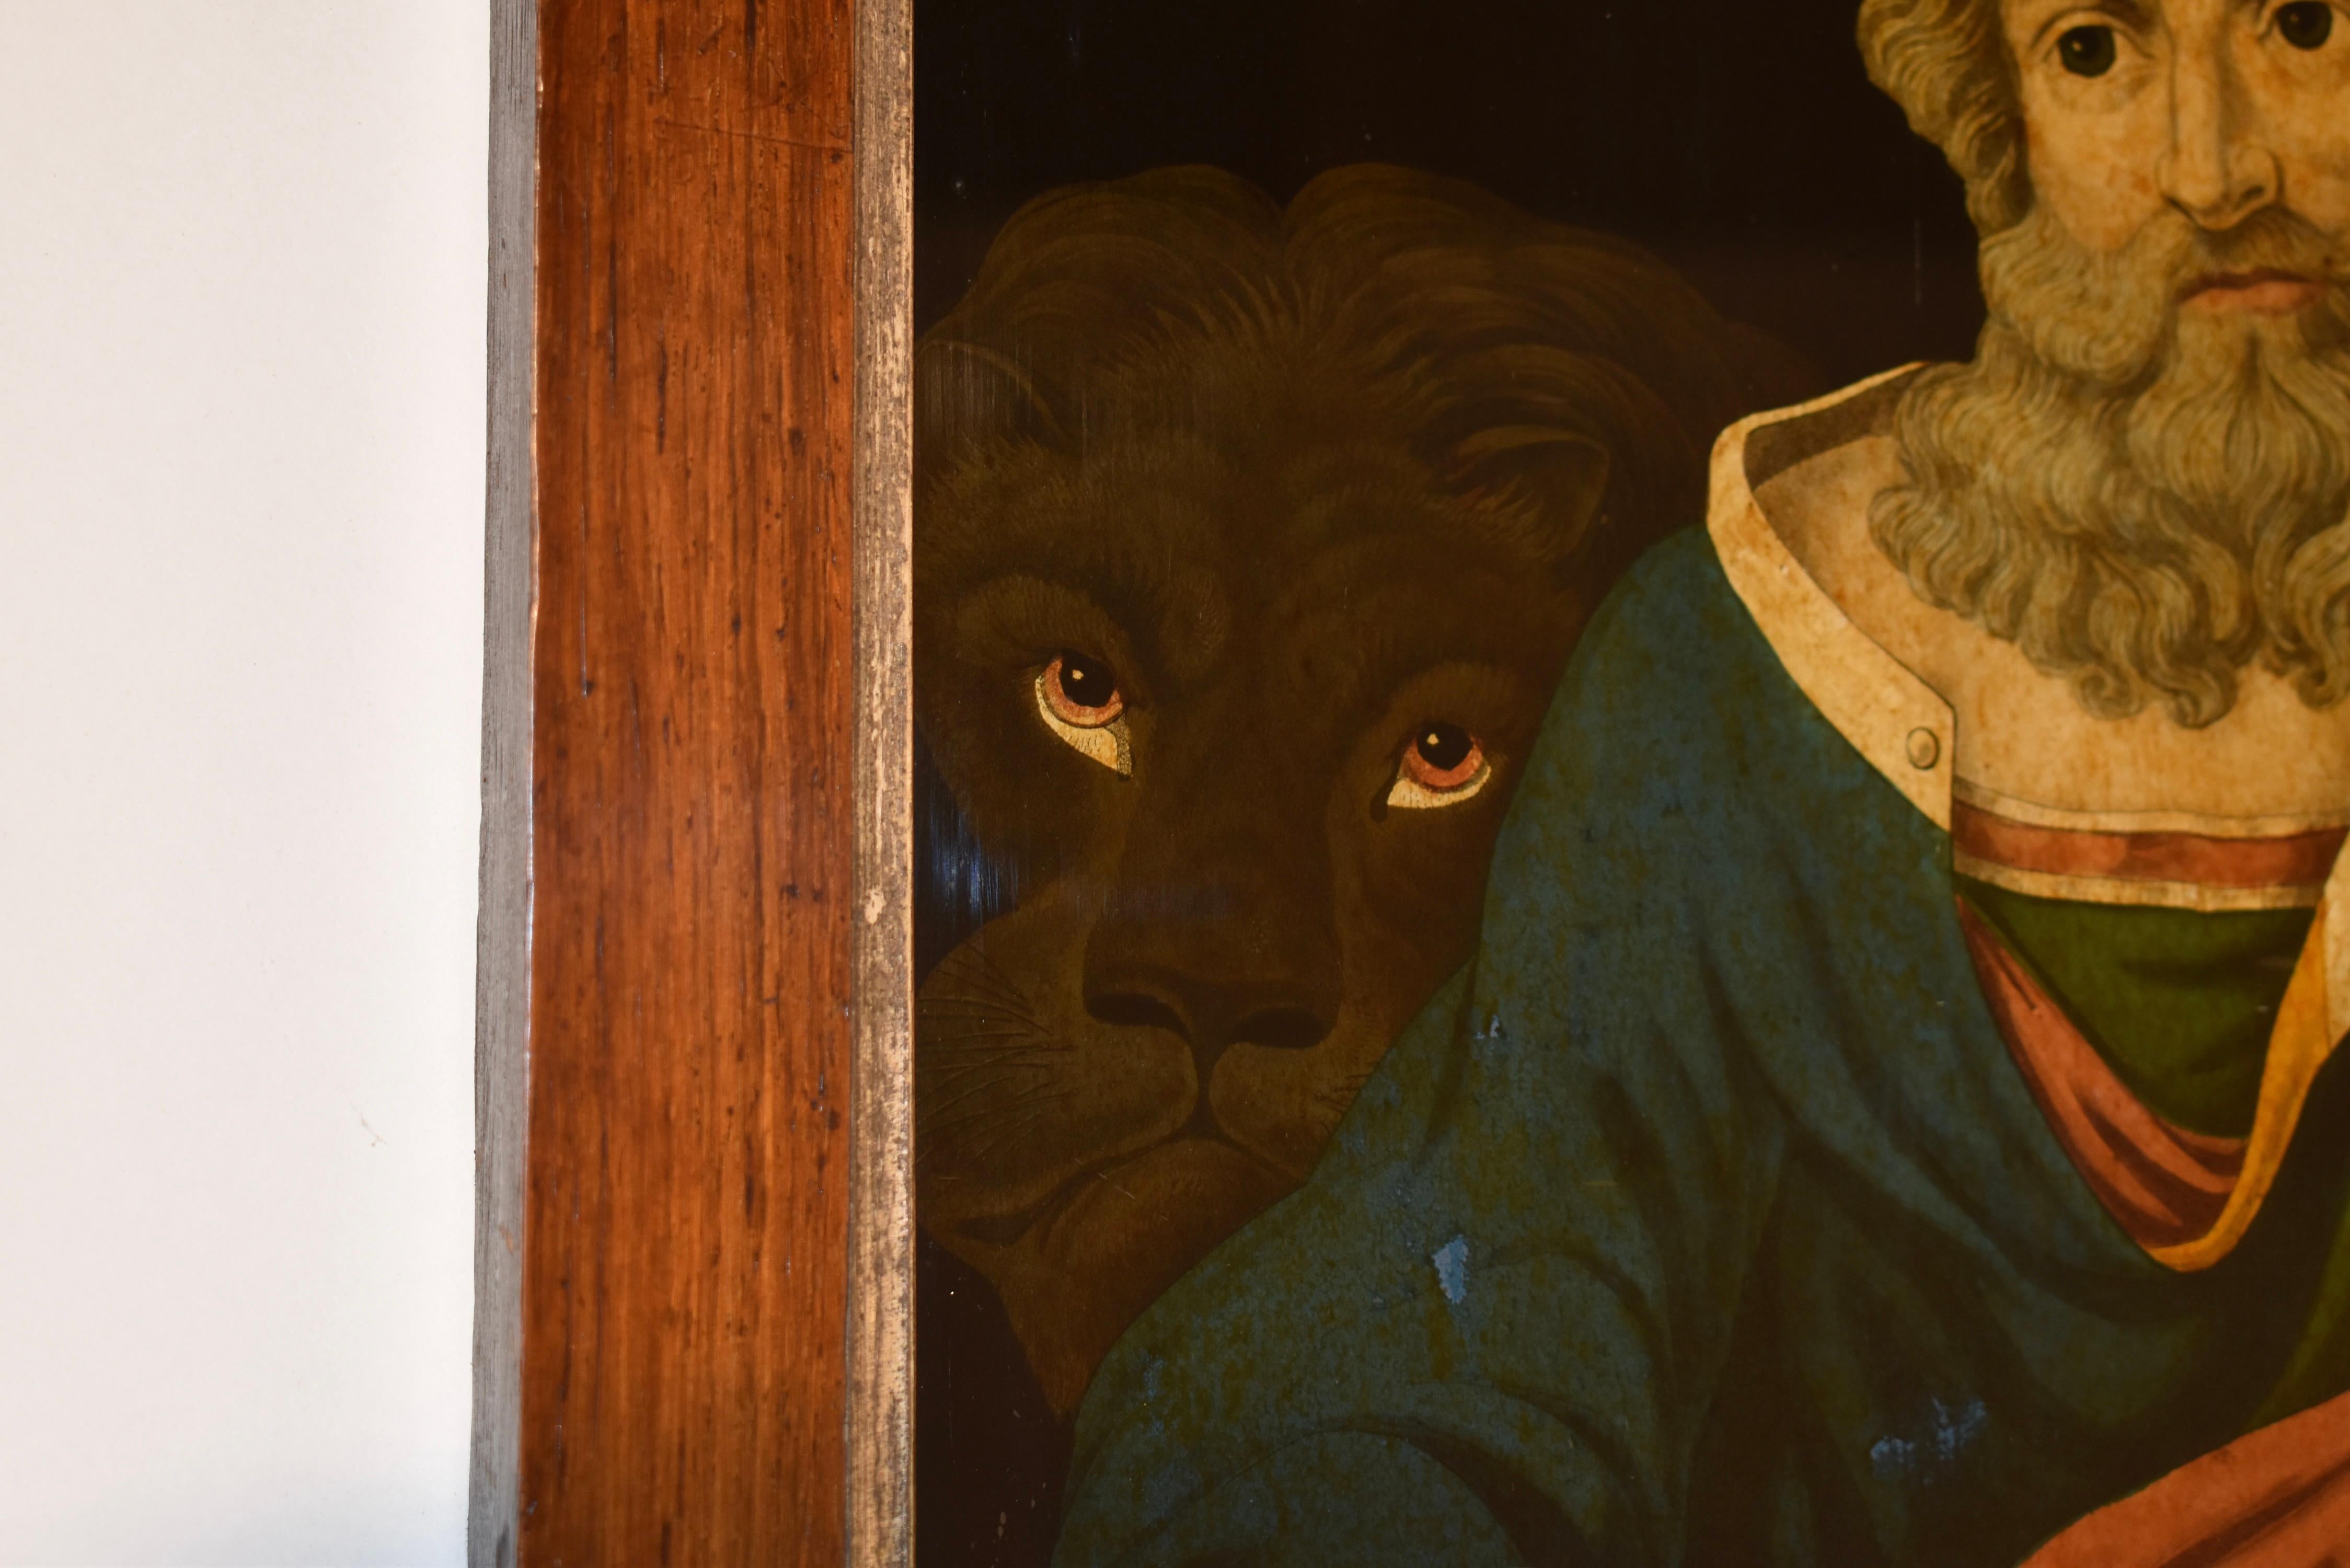 Zwei außergewöhnliche Hinterglasbilder der Heiligen Markus und Johannes.  Markus hat einen Löwen hinter sich und Johannes eine Krähe zu seiner Rechten, die eine Feder hält.  Hinterglasbilder sind selten in gutem Zustand zu finden, da viele von ihnen